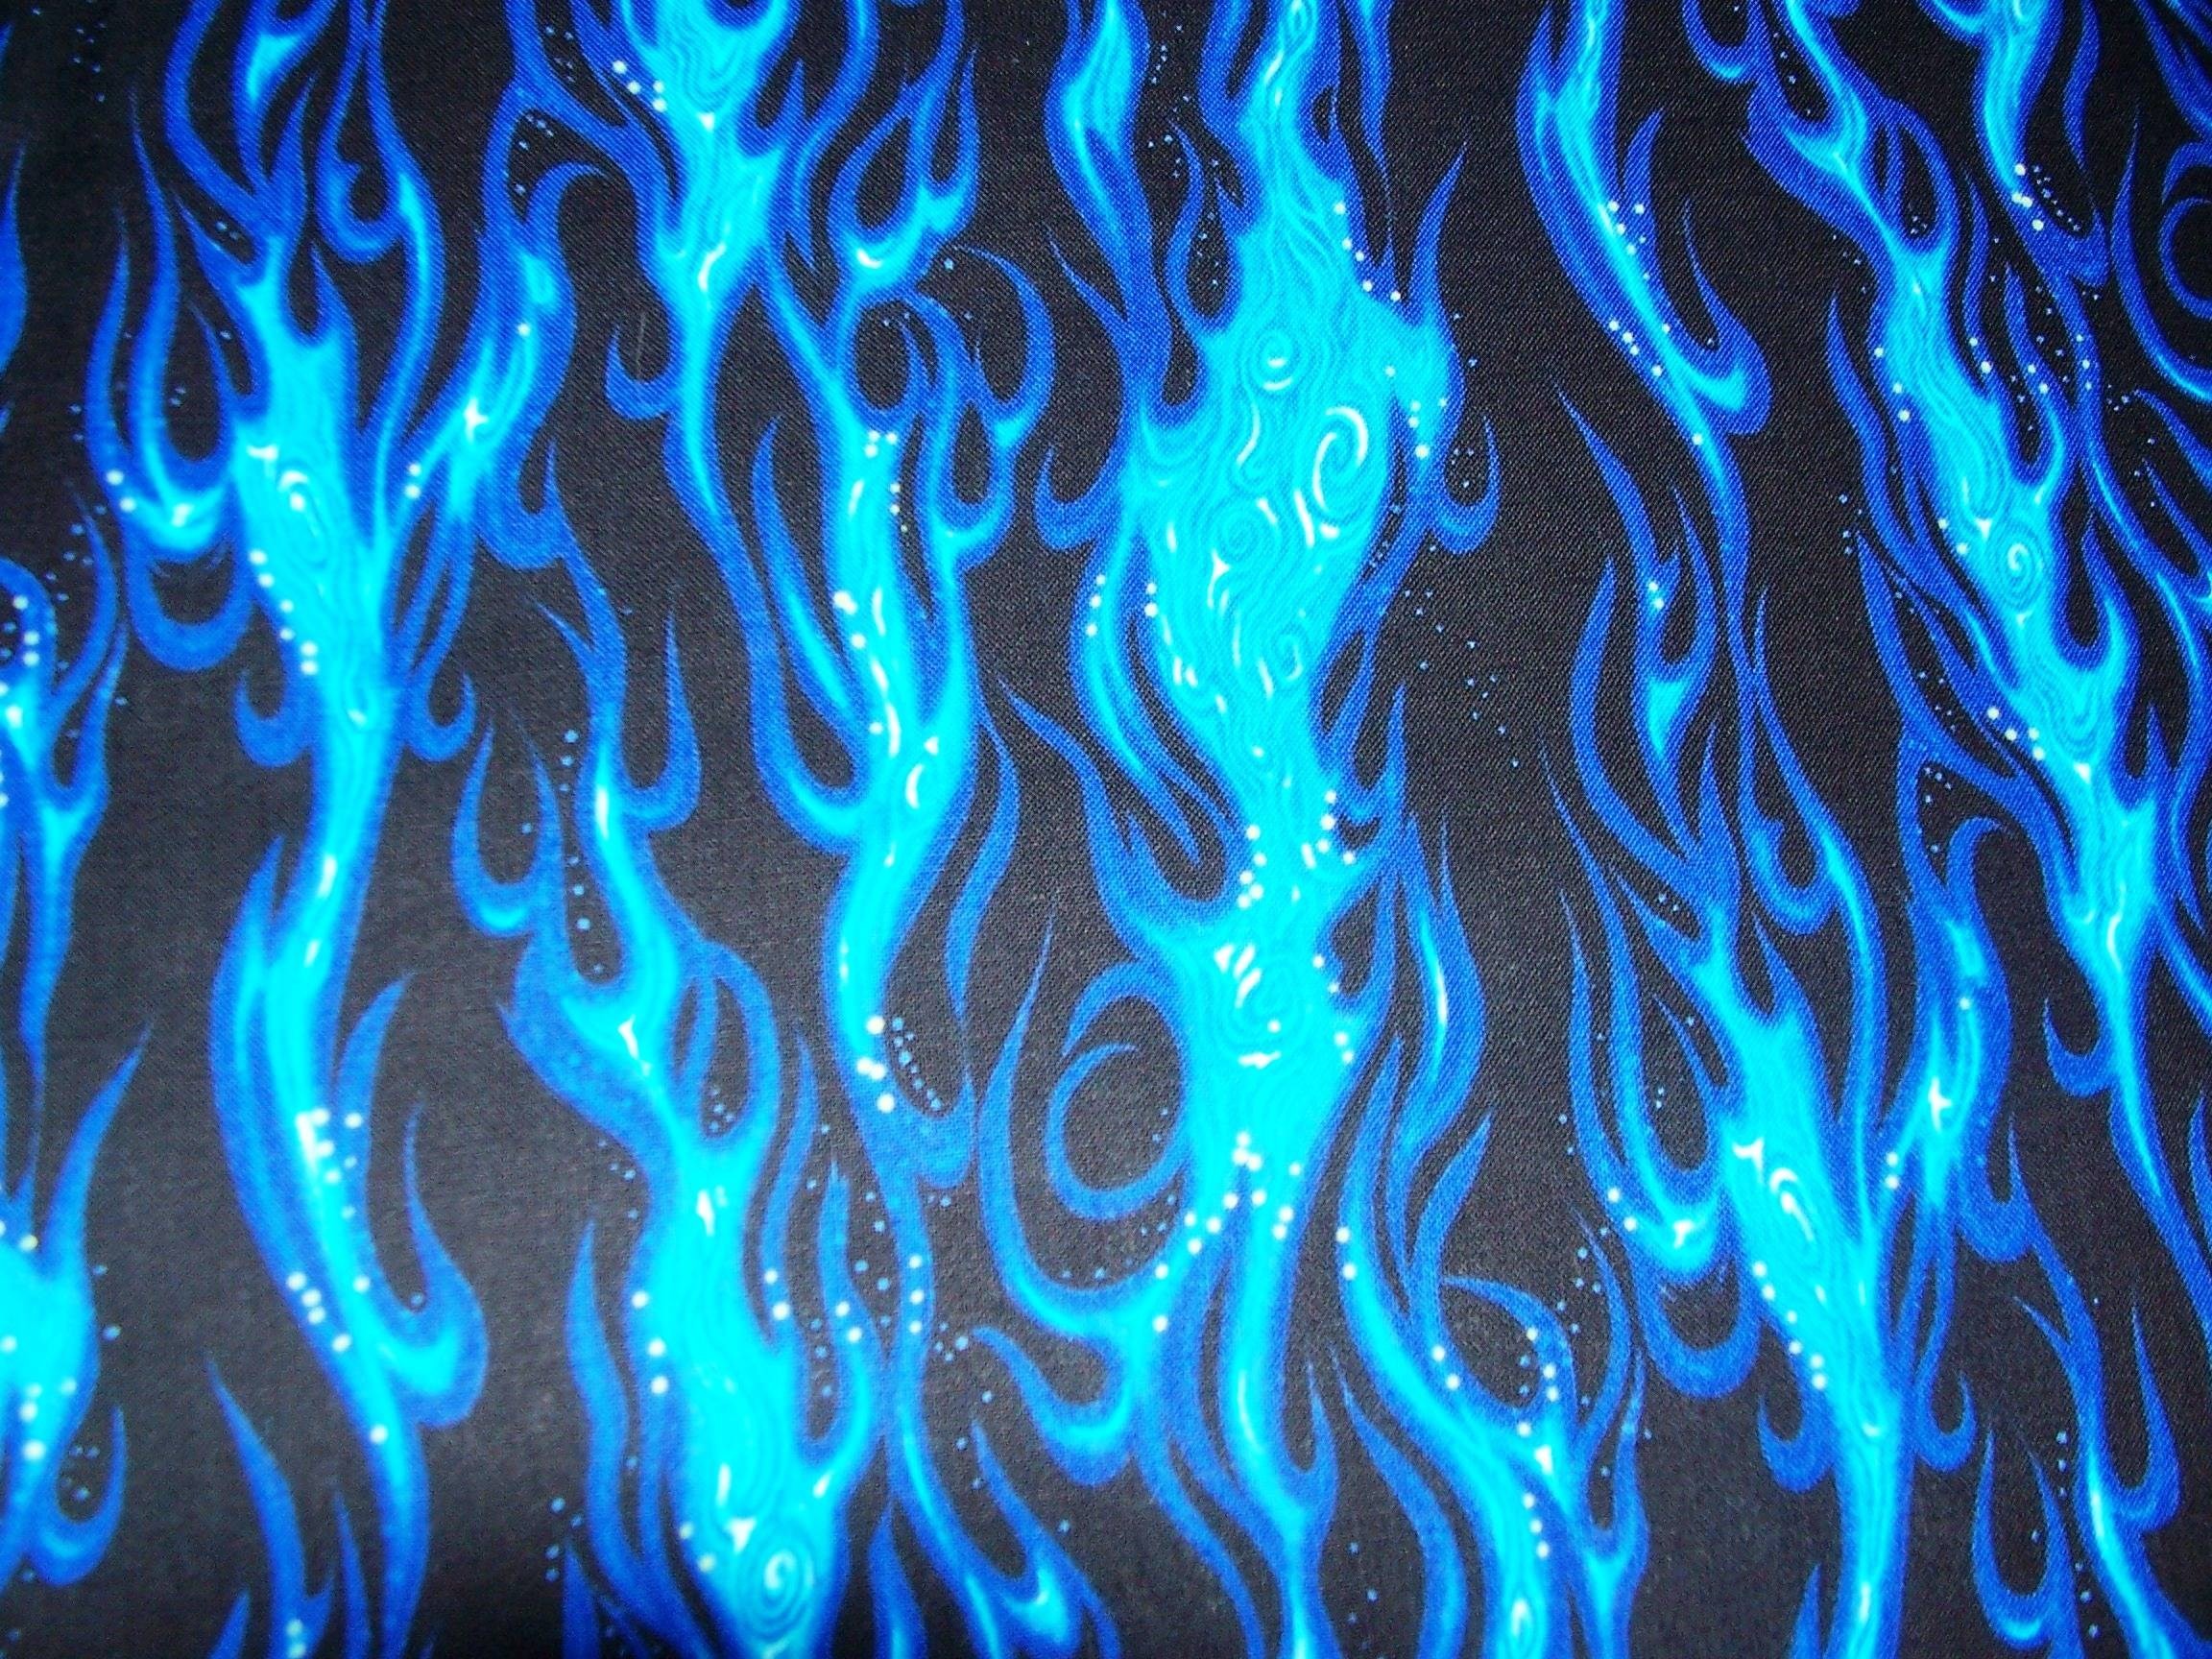 Blue fire wallpaper hd backgrounds desktop